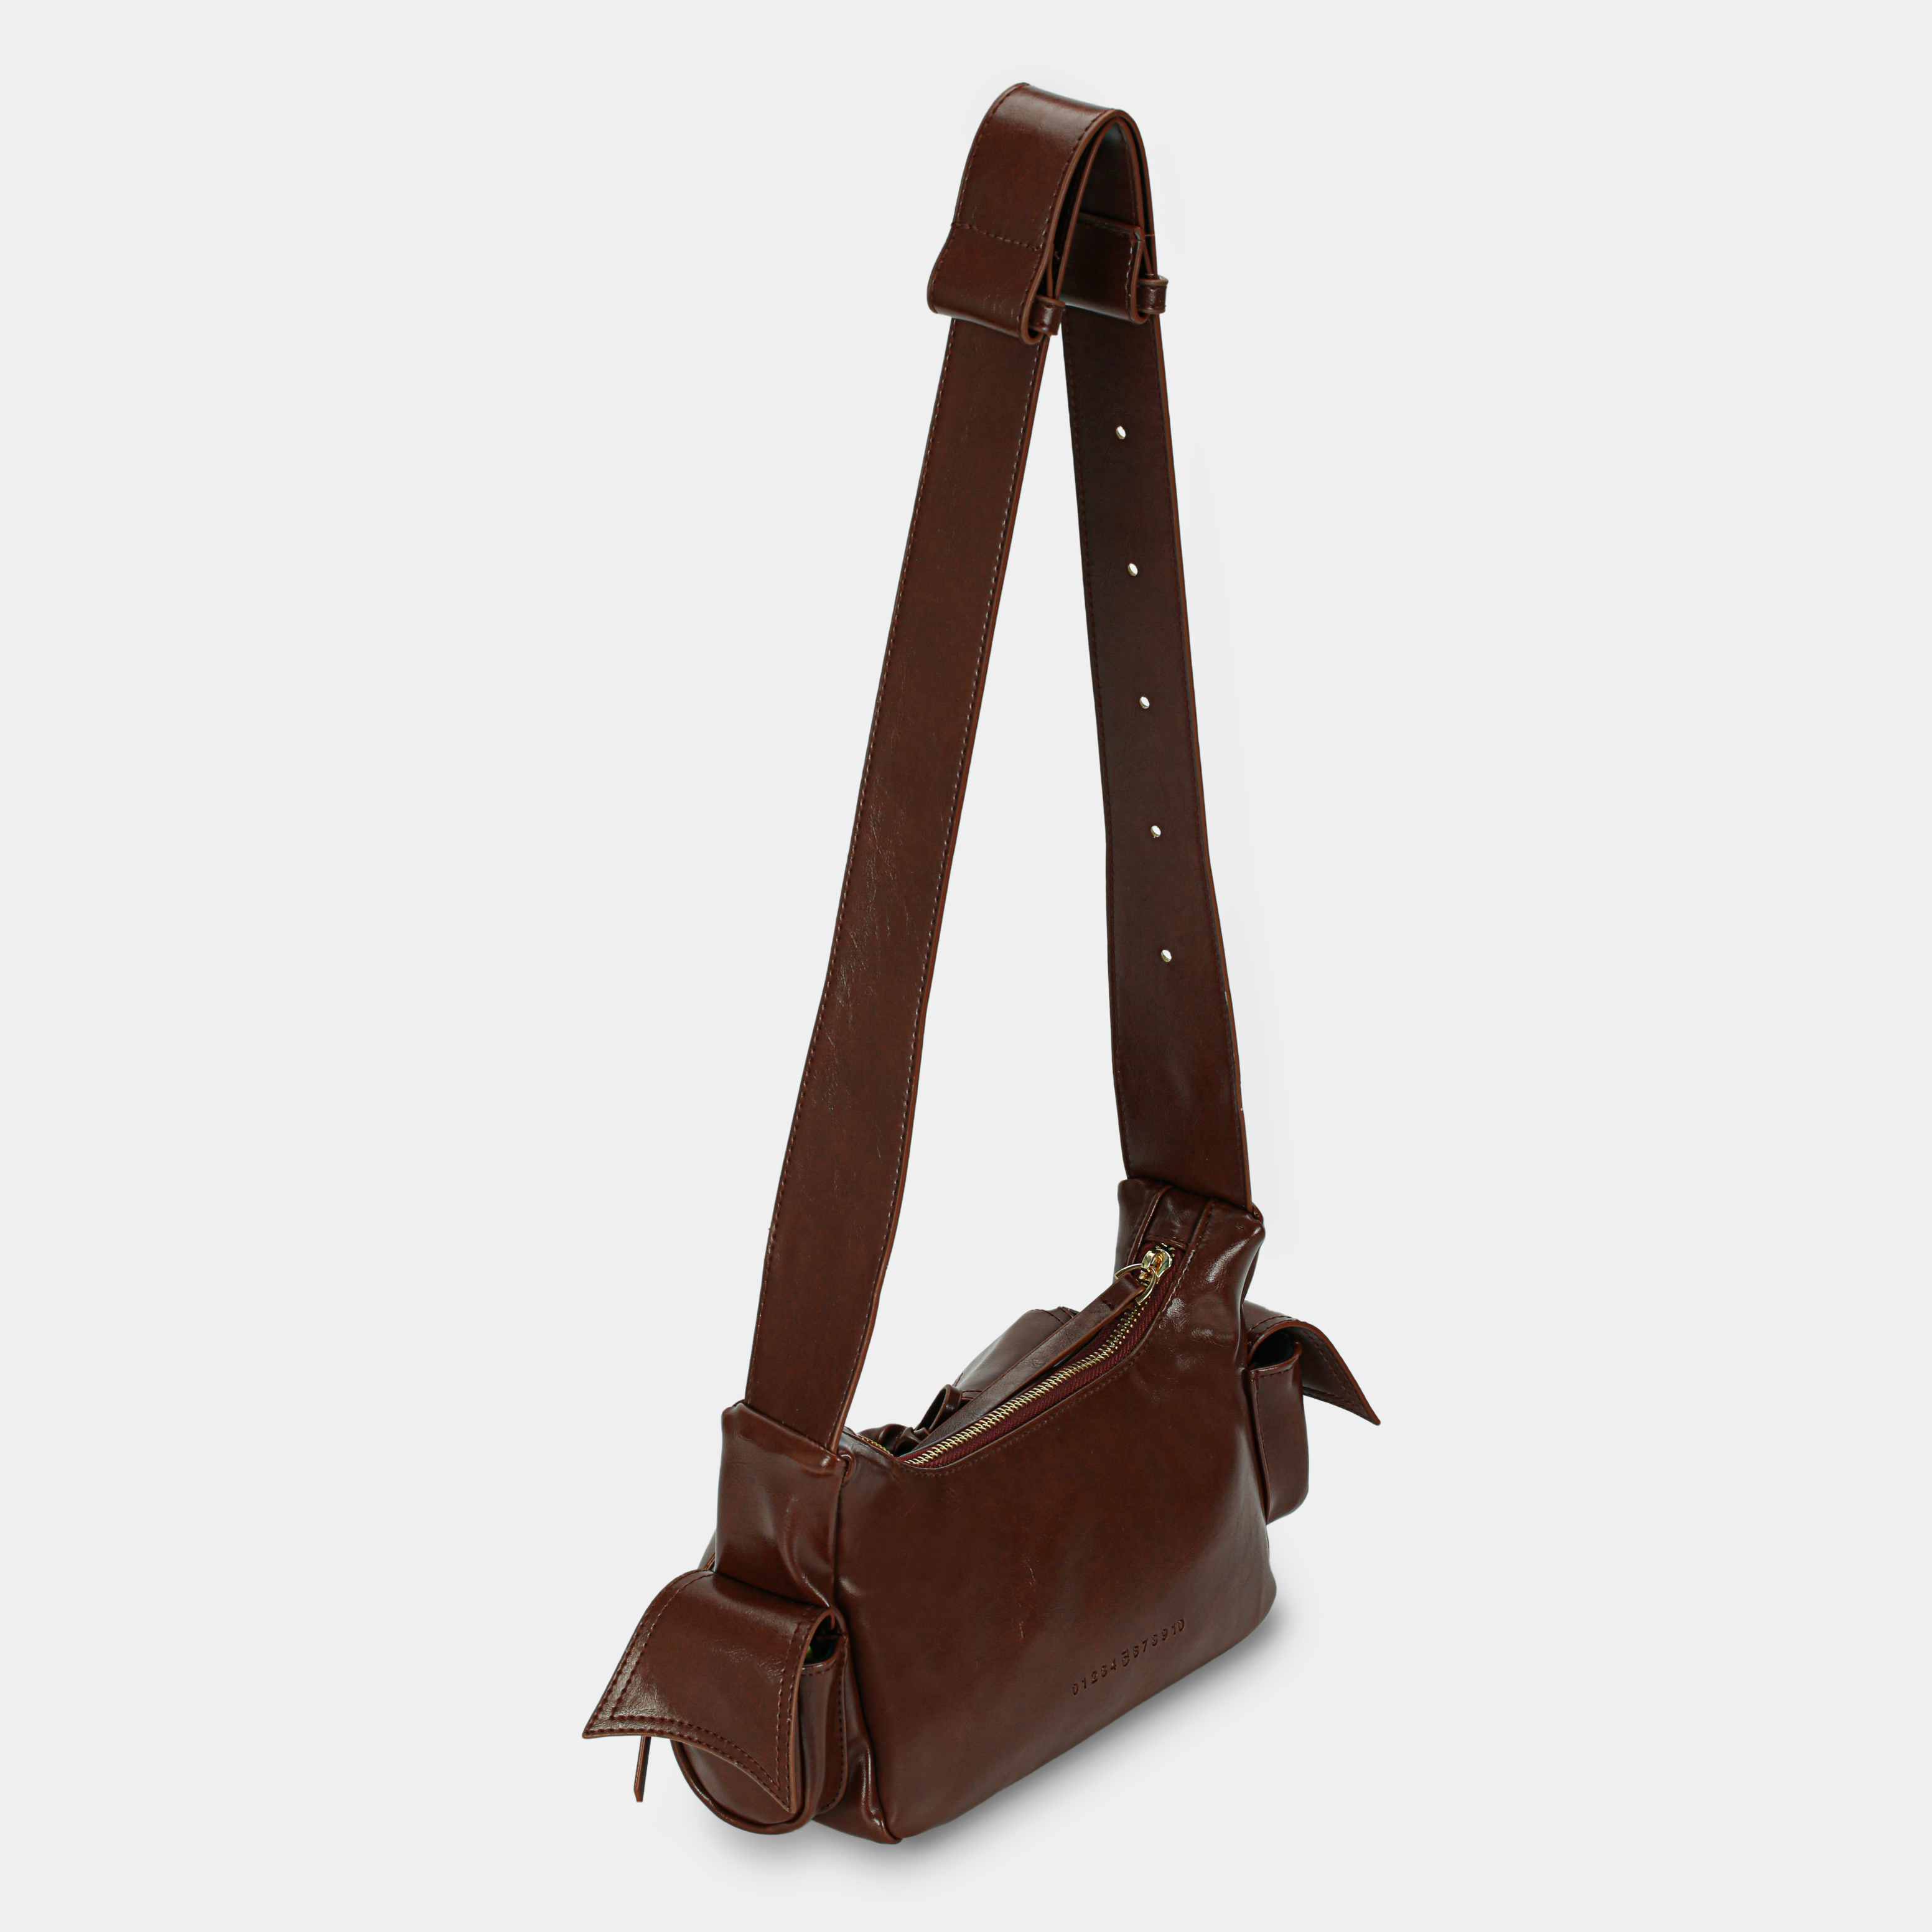 Handbag C5-Pocket size S in Dark Brown